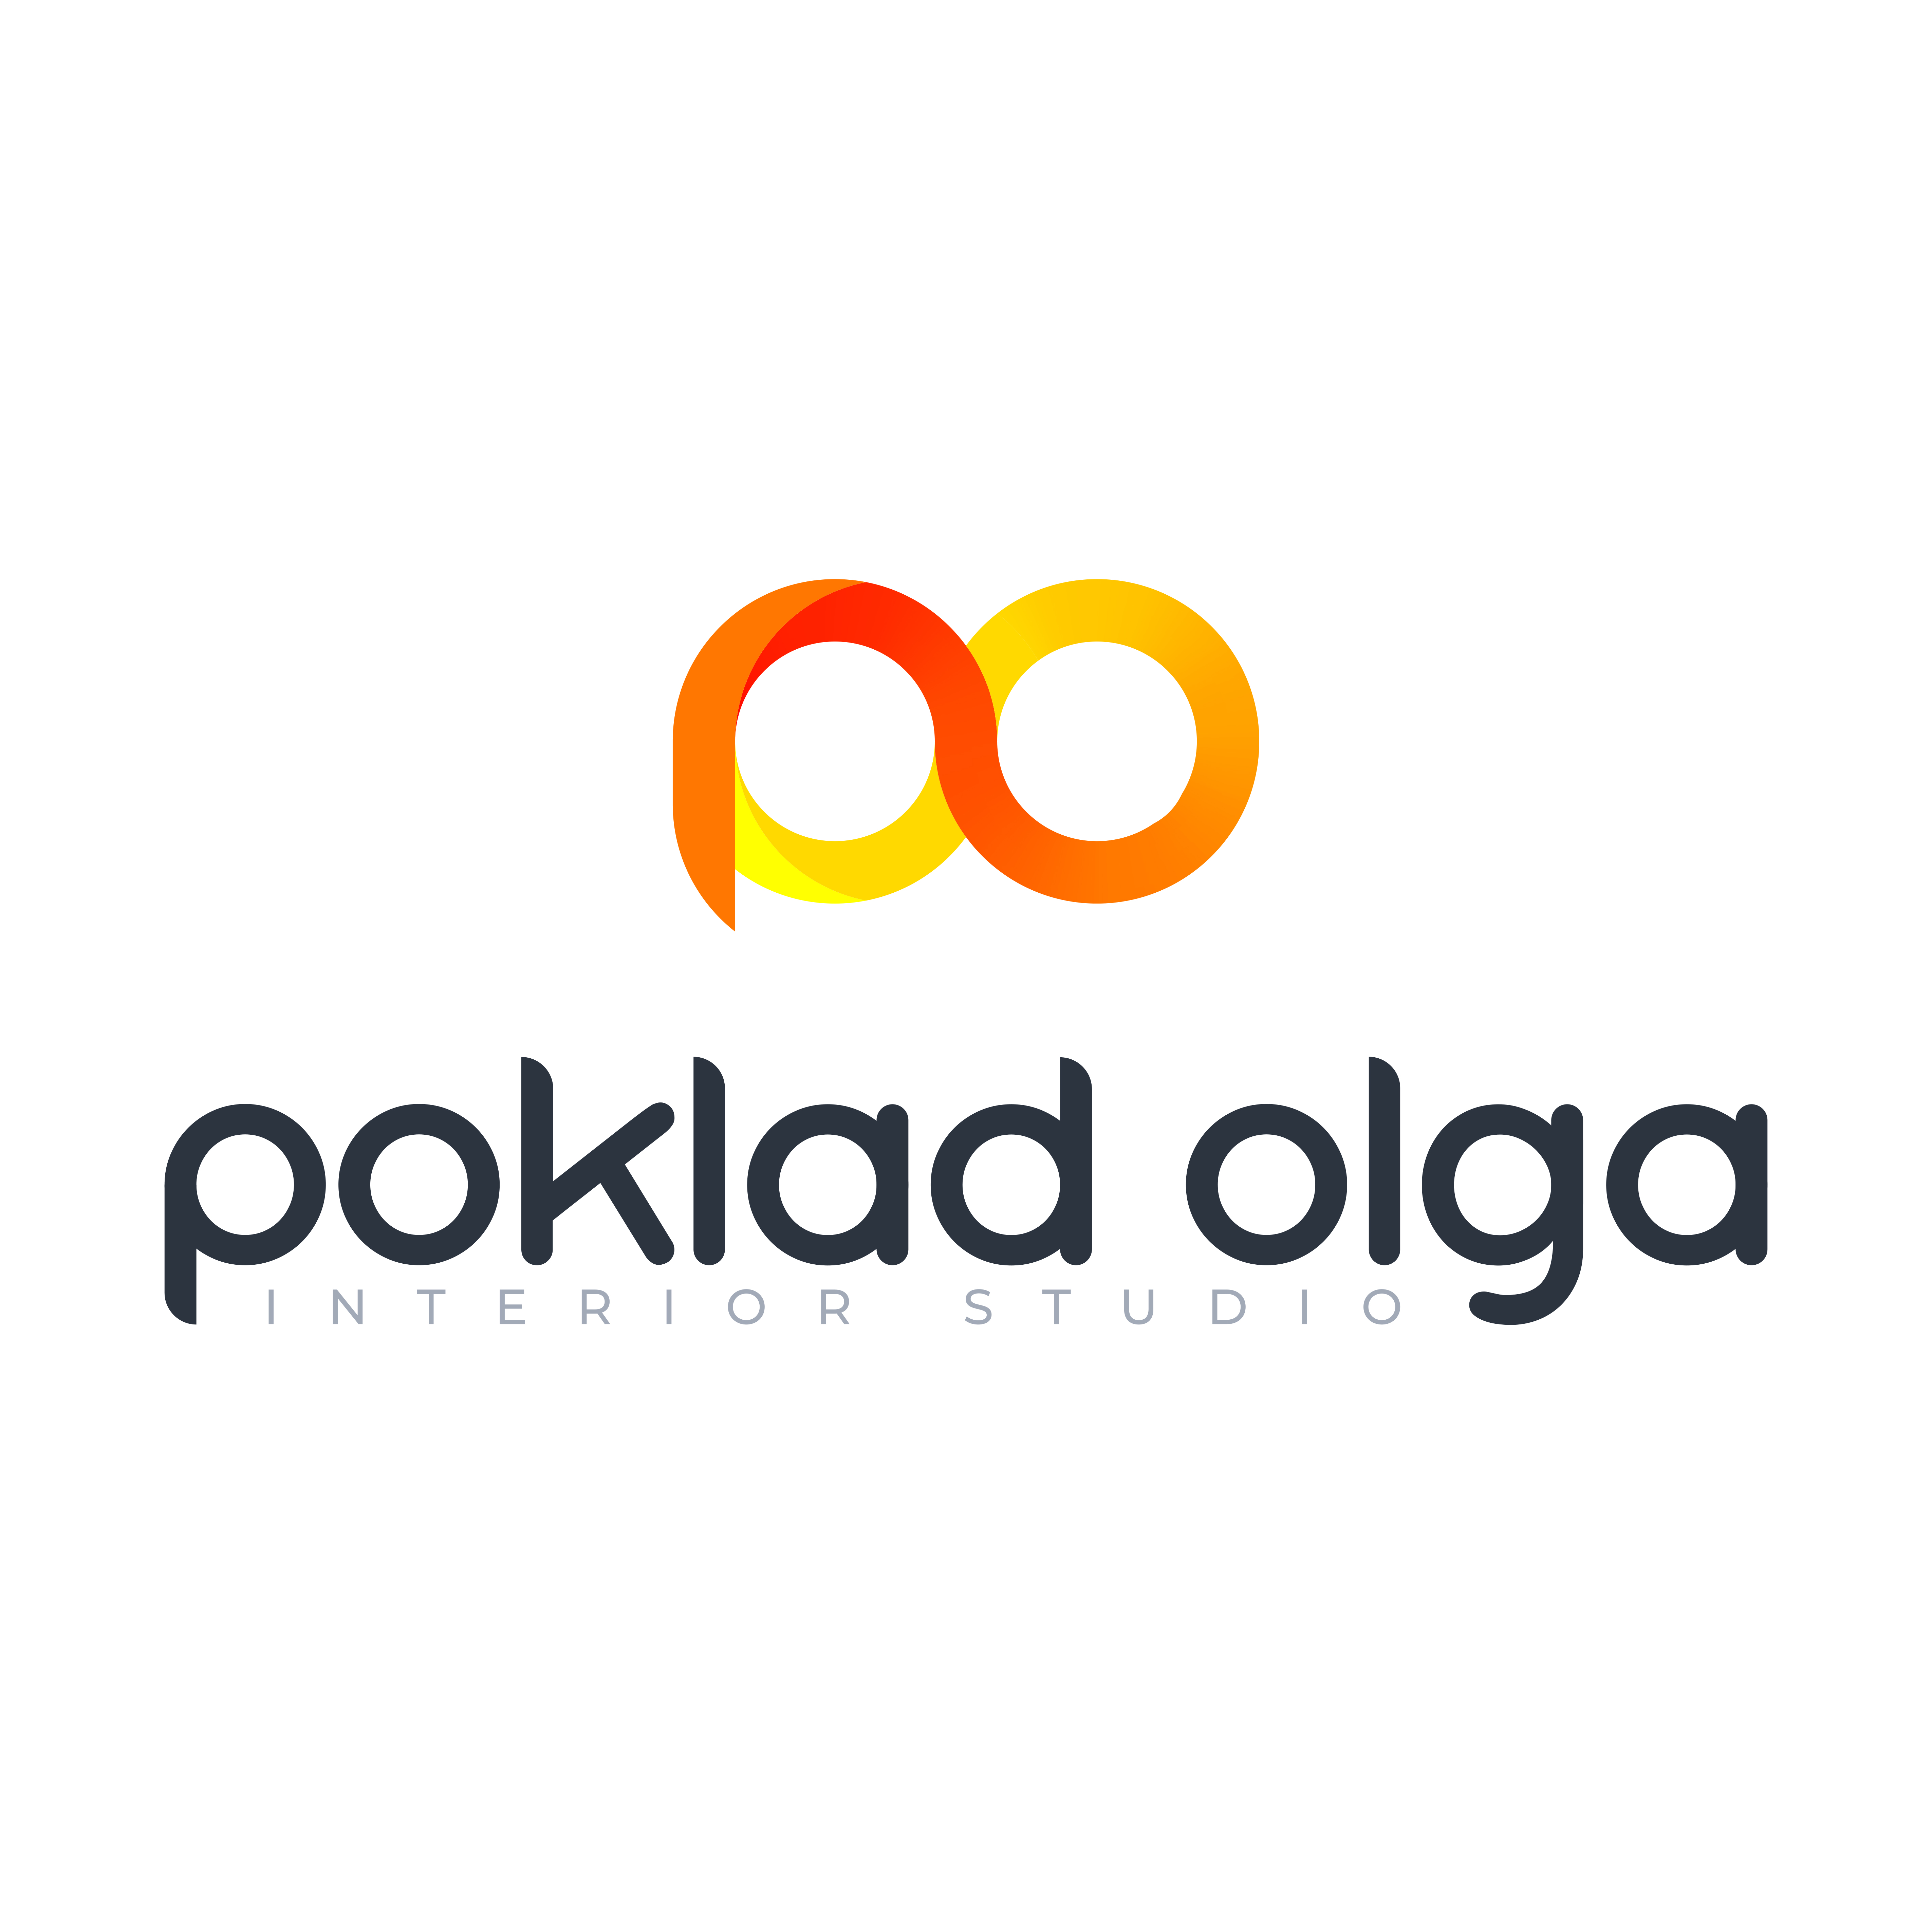 Логотип Poklad.studio